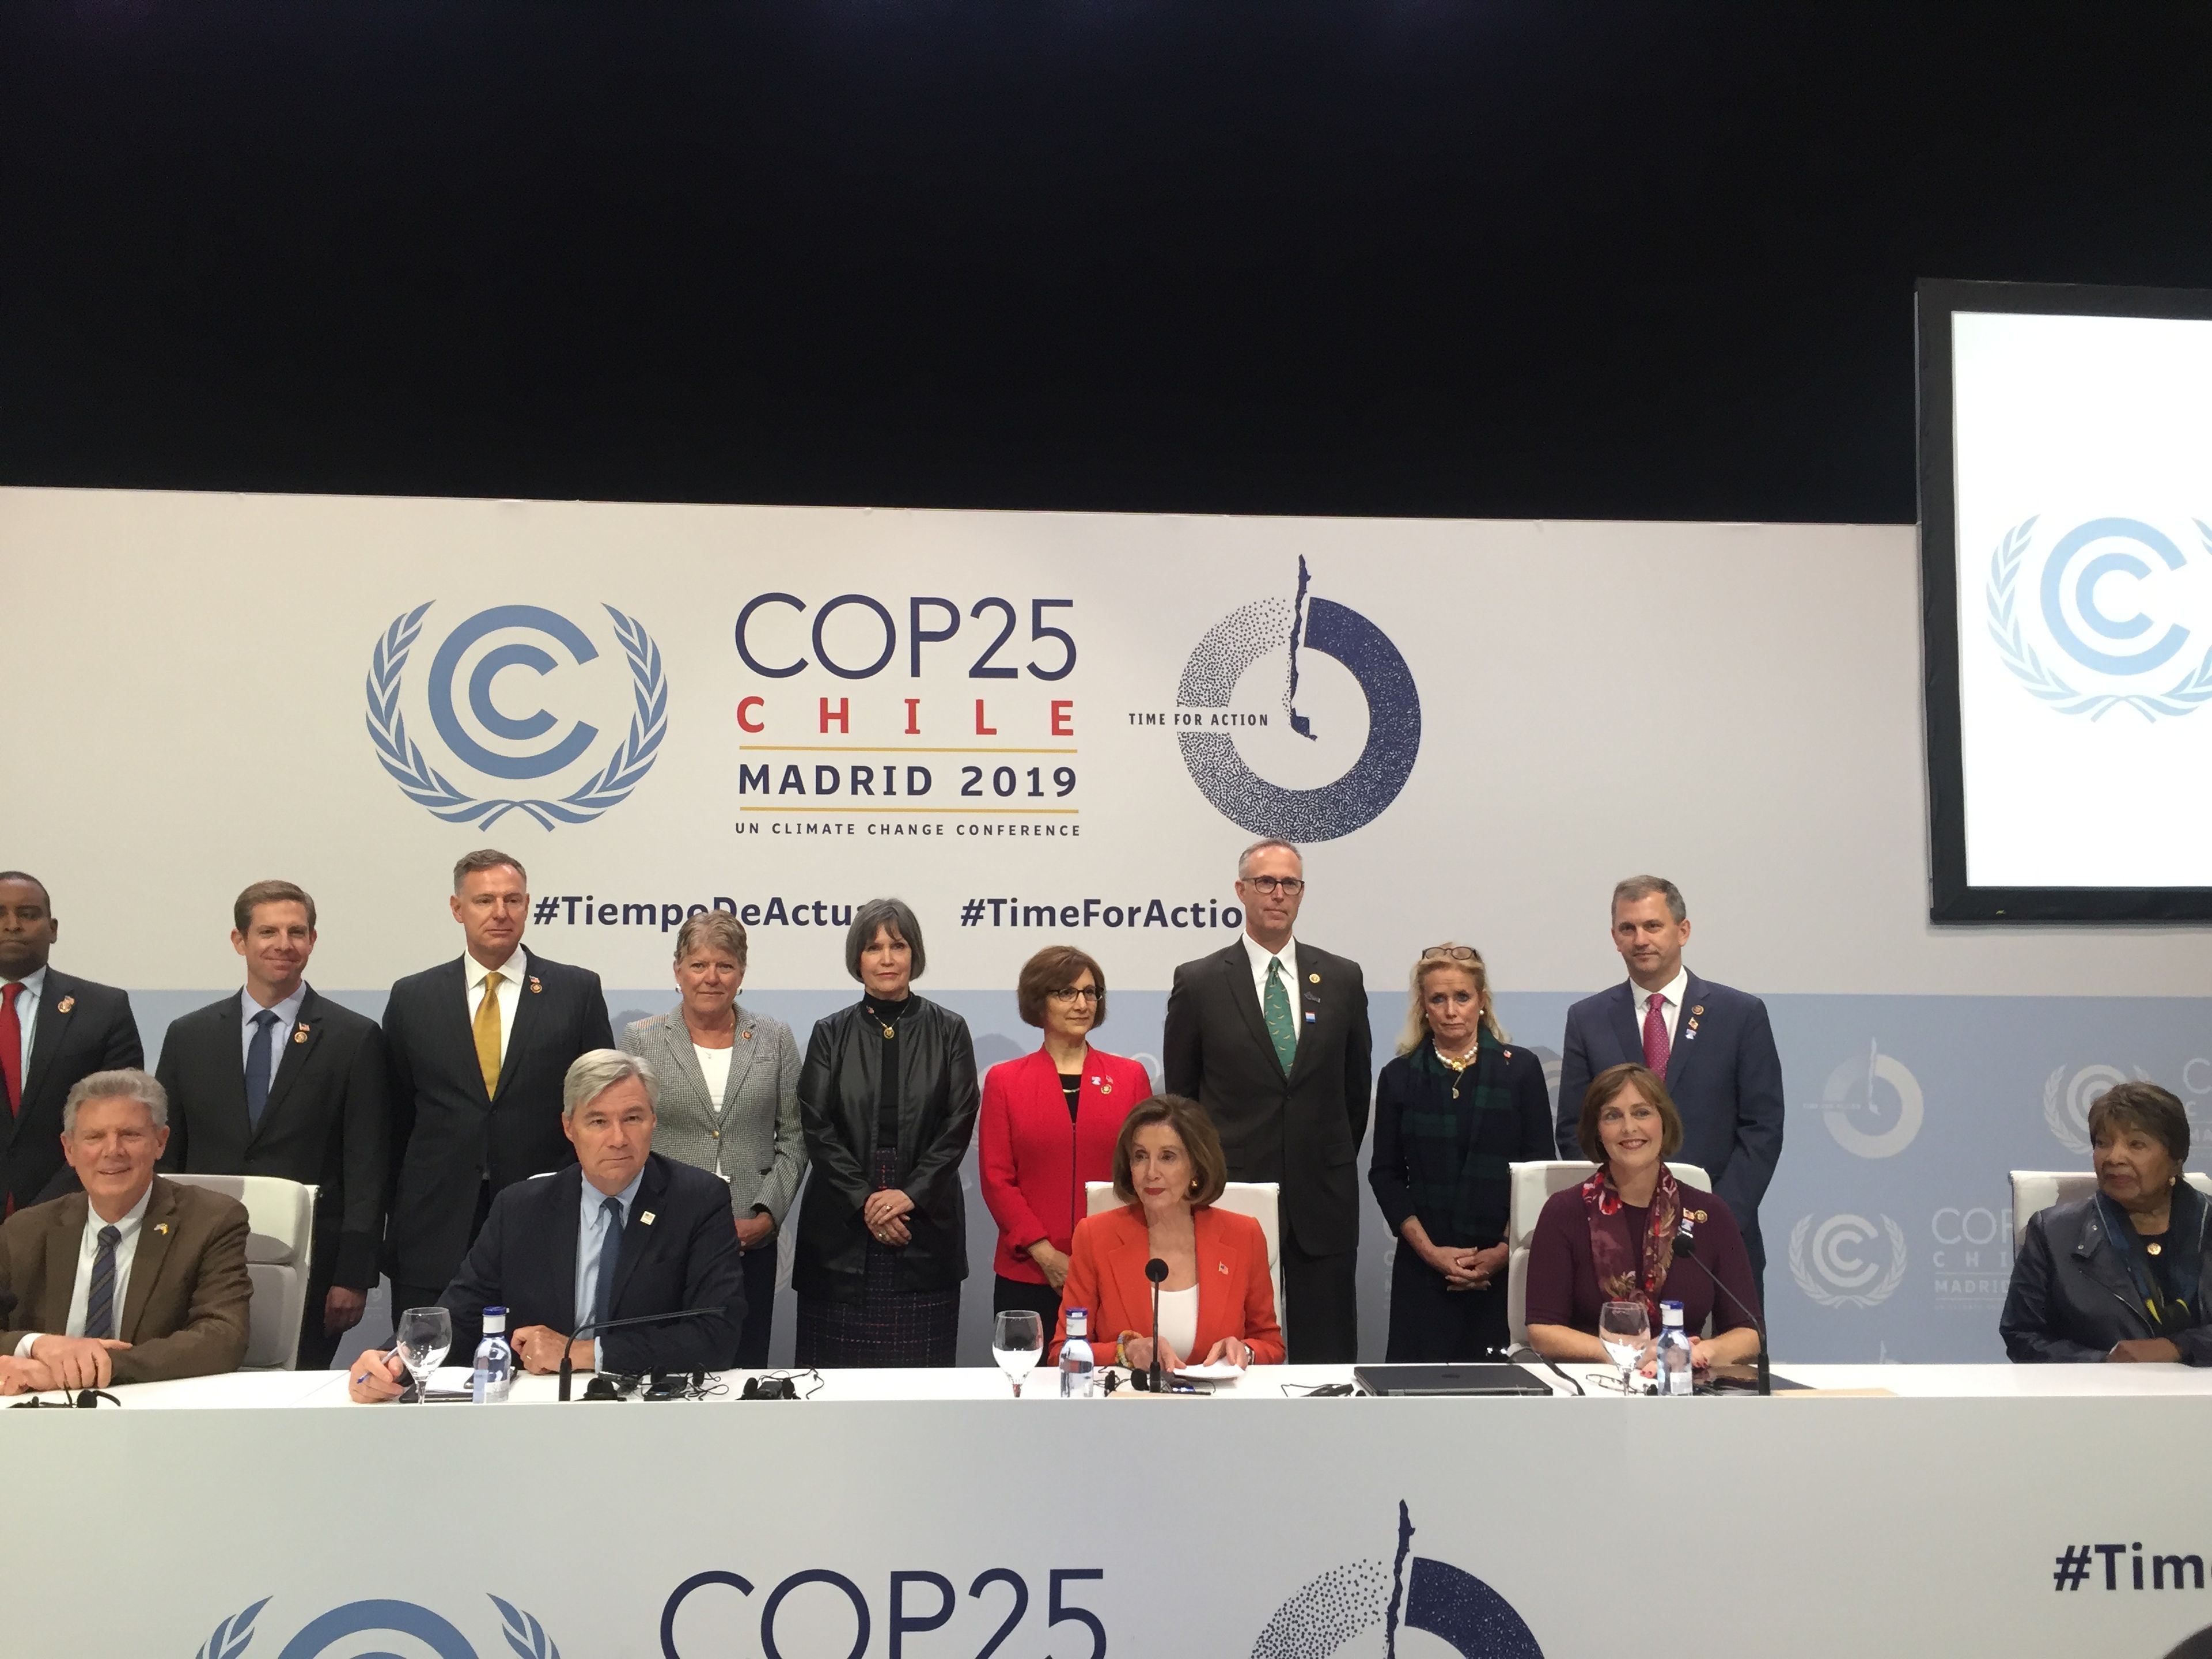 La presidenta de la Cámara de Representantes de Estados Unidos, Nancy Pelosi, durante la rueda de prensa de la COP25